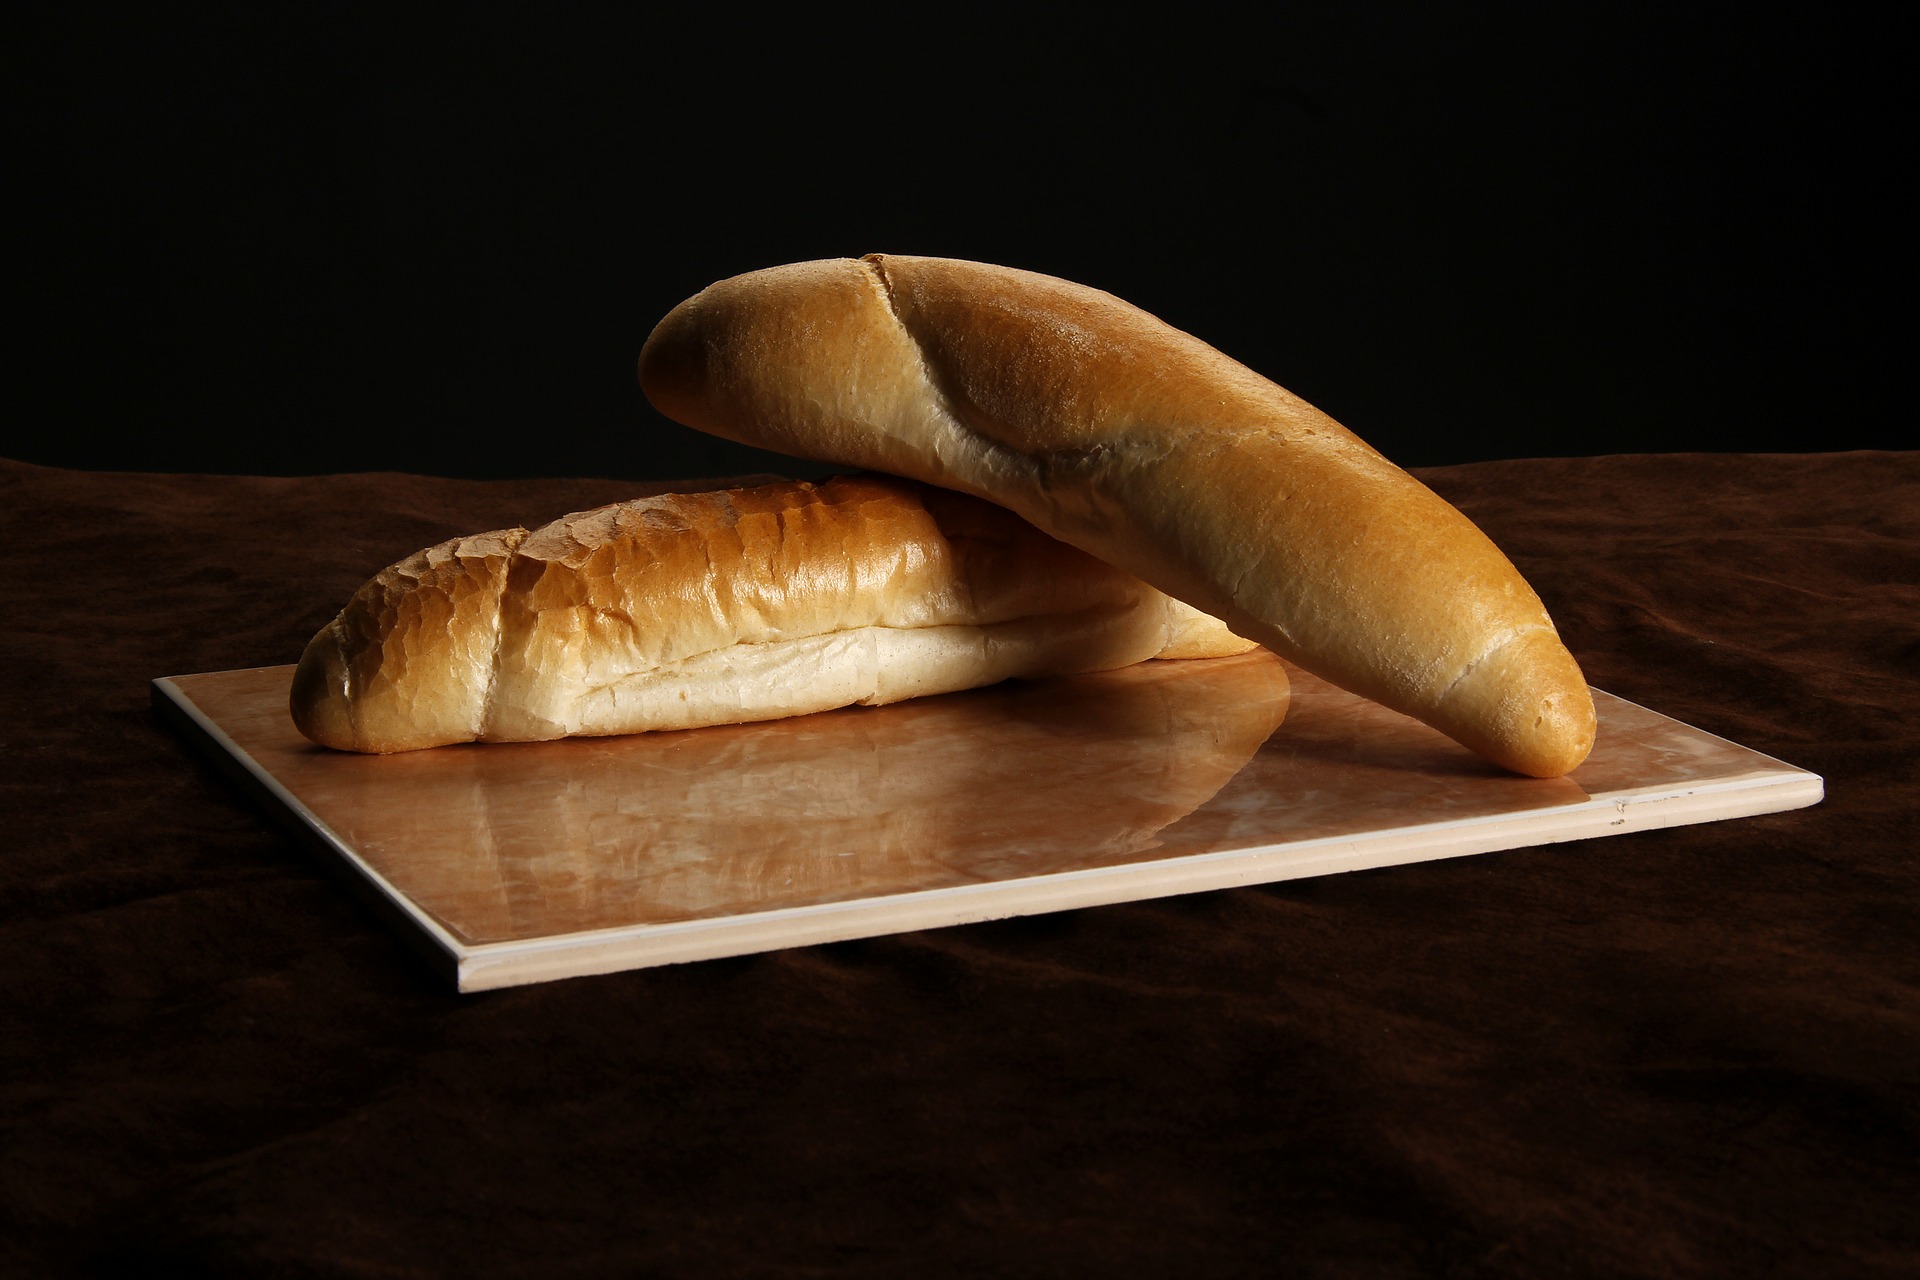 bread 565911 1920